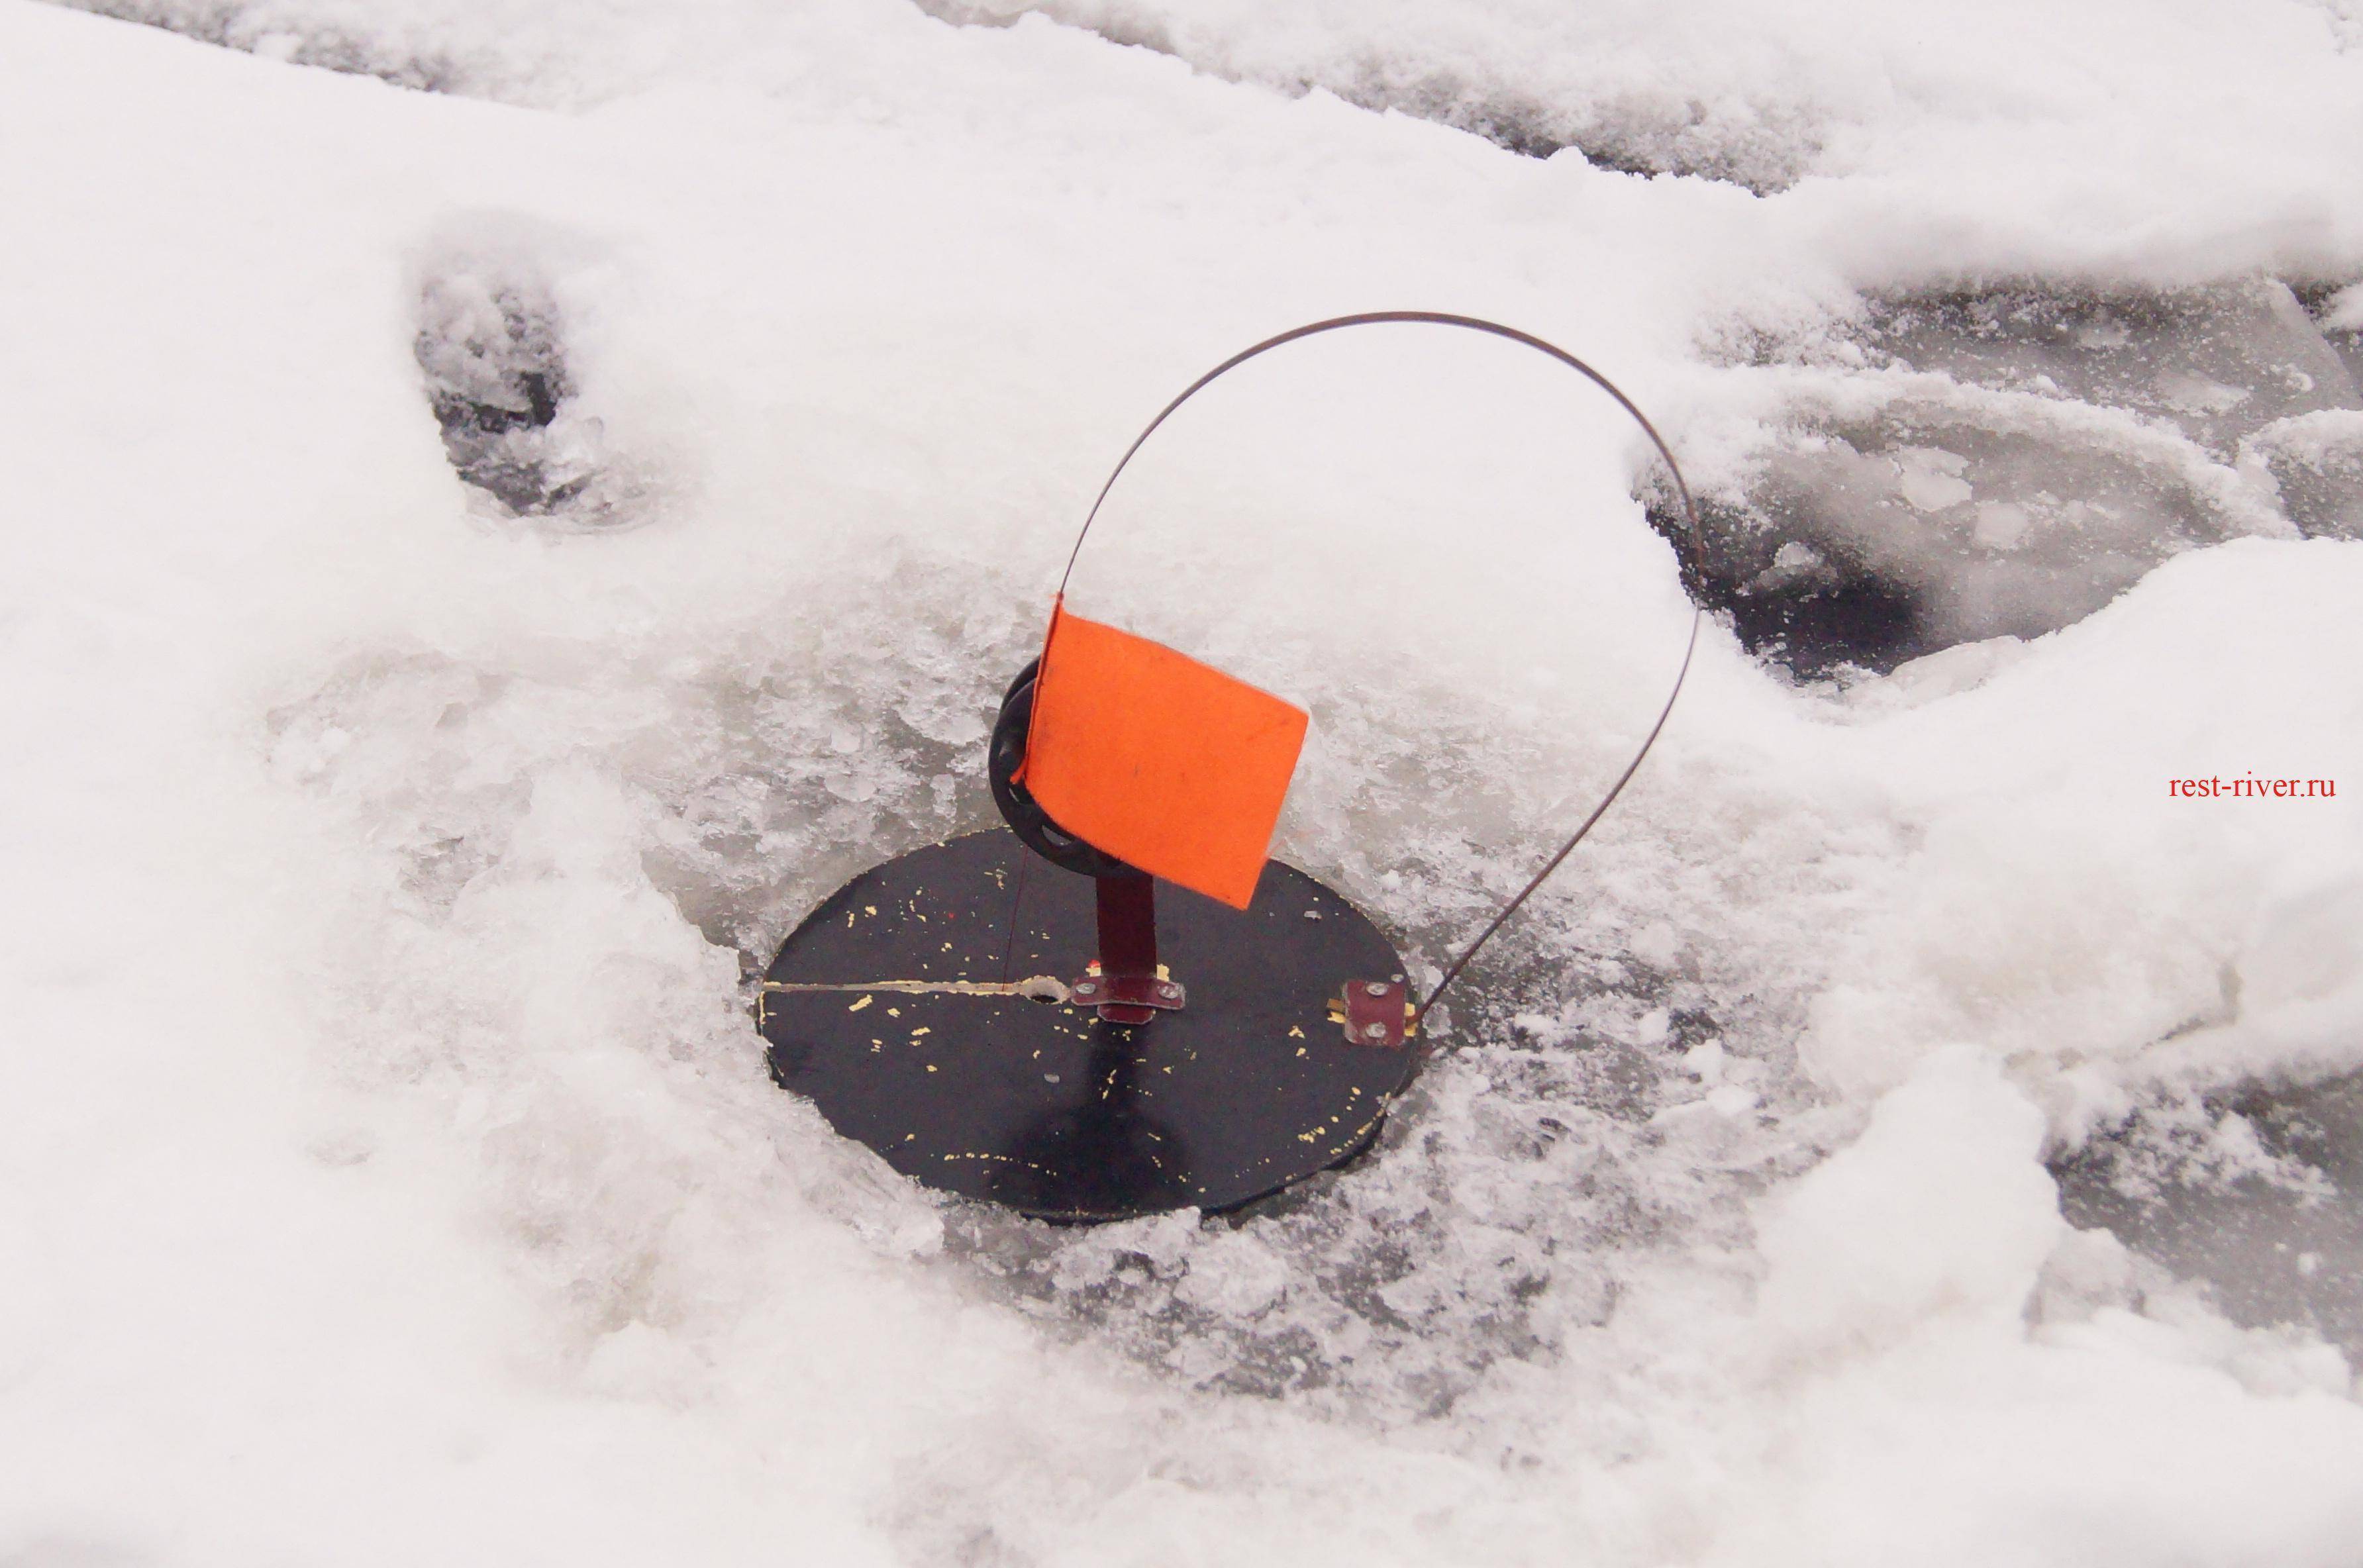 ᐉ ловля зимой со льда на жерлицу: конструкции зимних жерлиц, самостоятельное изготовление жерлиц - ✅ ribalka-snasti.ru